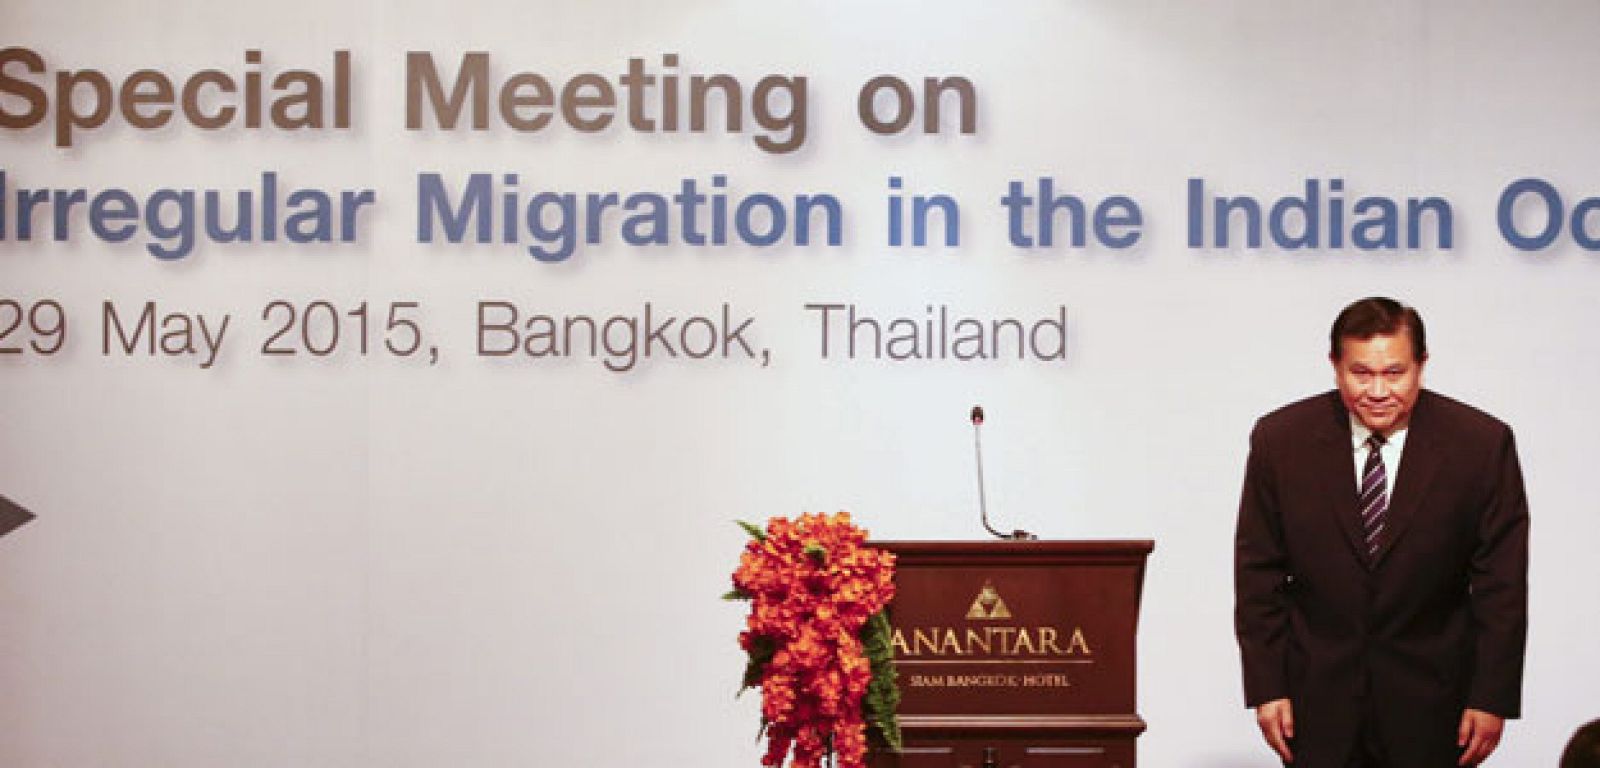 El viceprimer ministro y ministro de Asuntos Exteriores tailandés durante la sesión inaugural de una Reunión Especial sobre Inmigración Irregular en el Océano Índico celebrada en Bangkok.